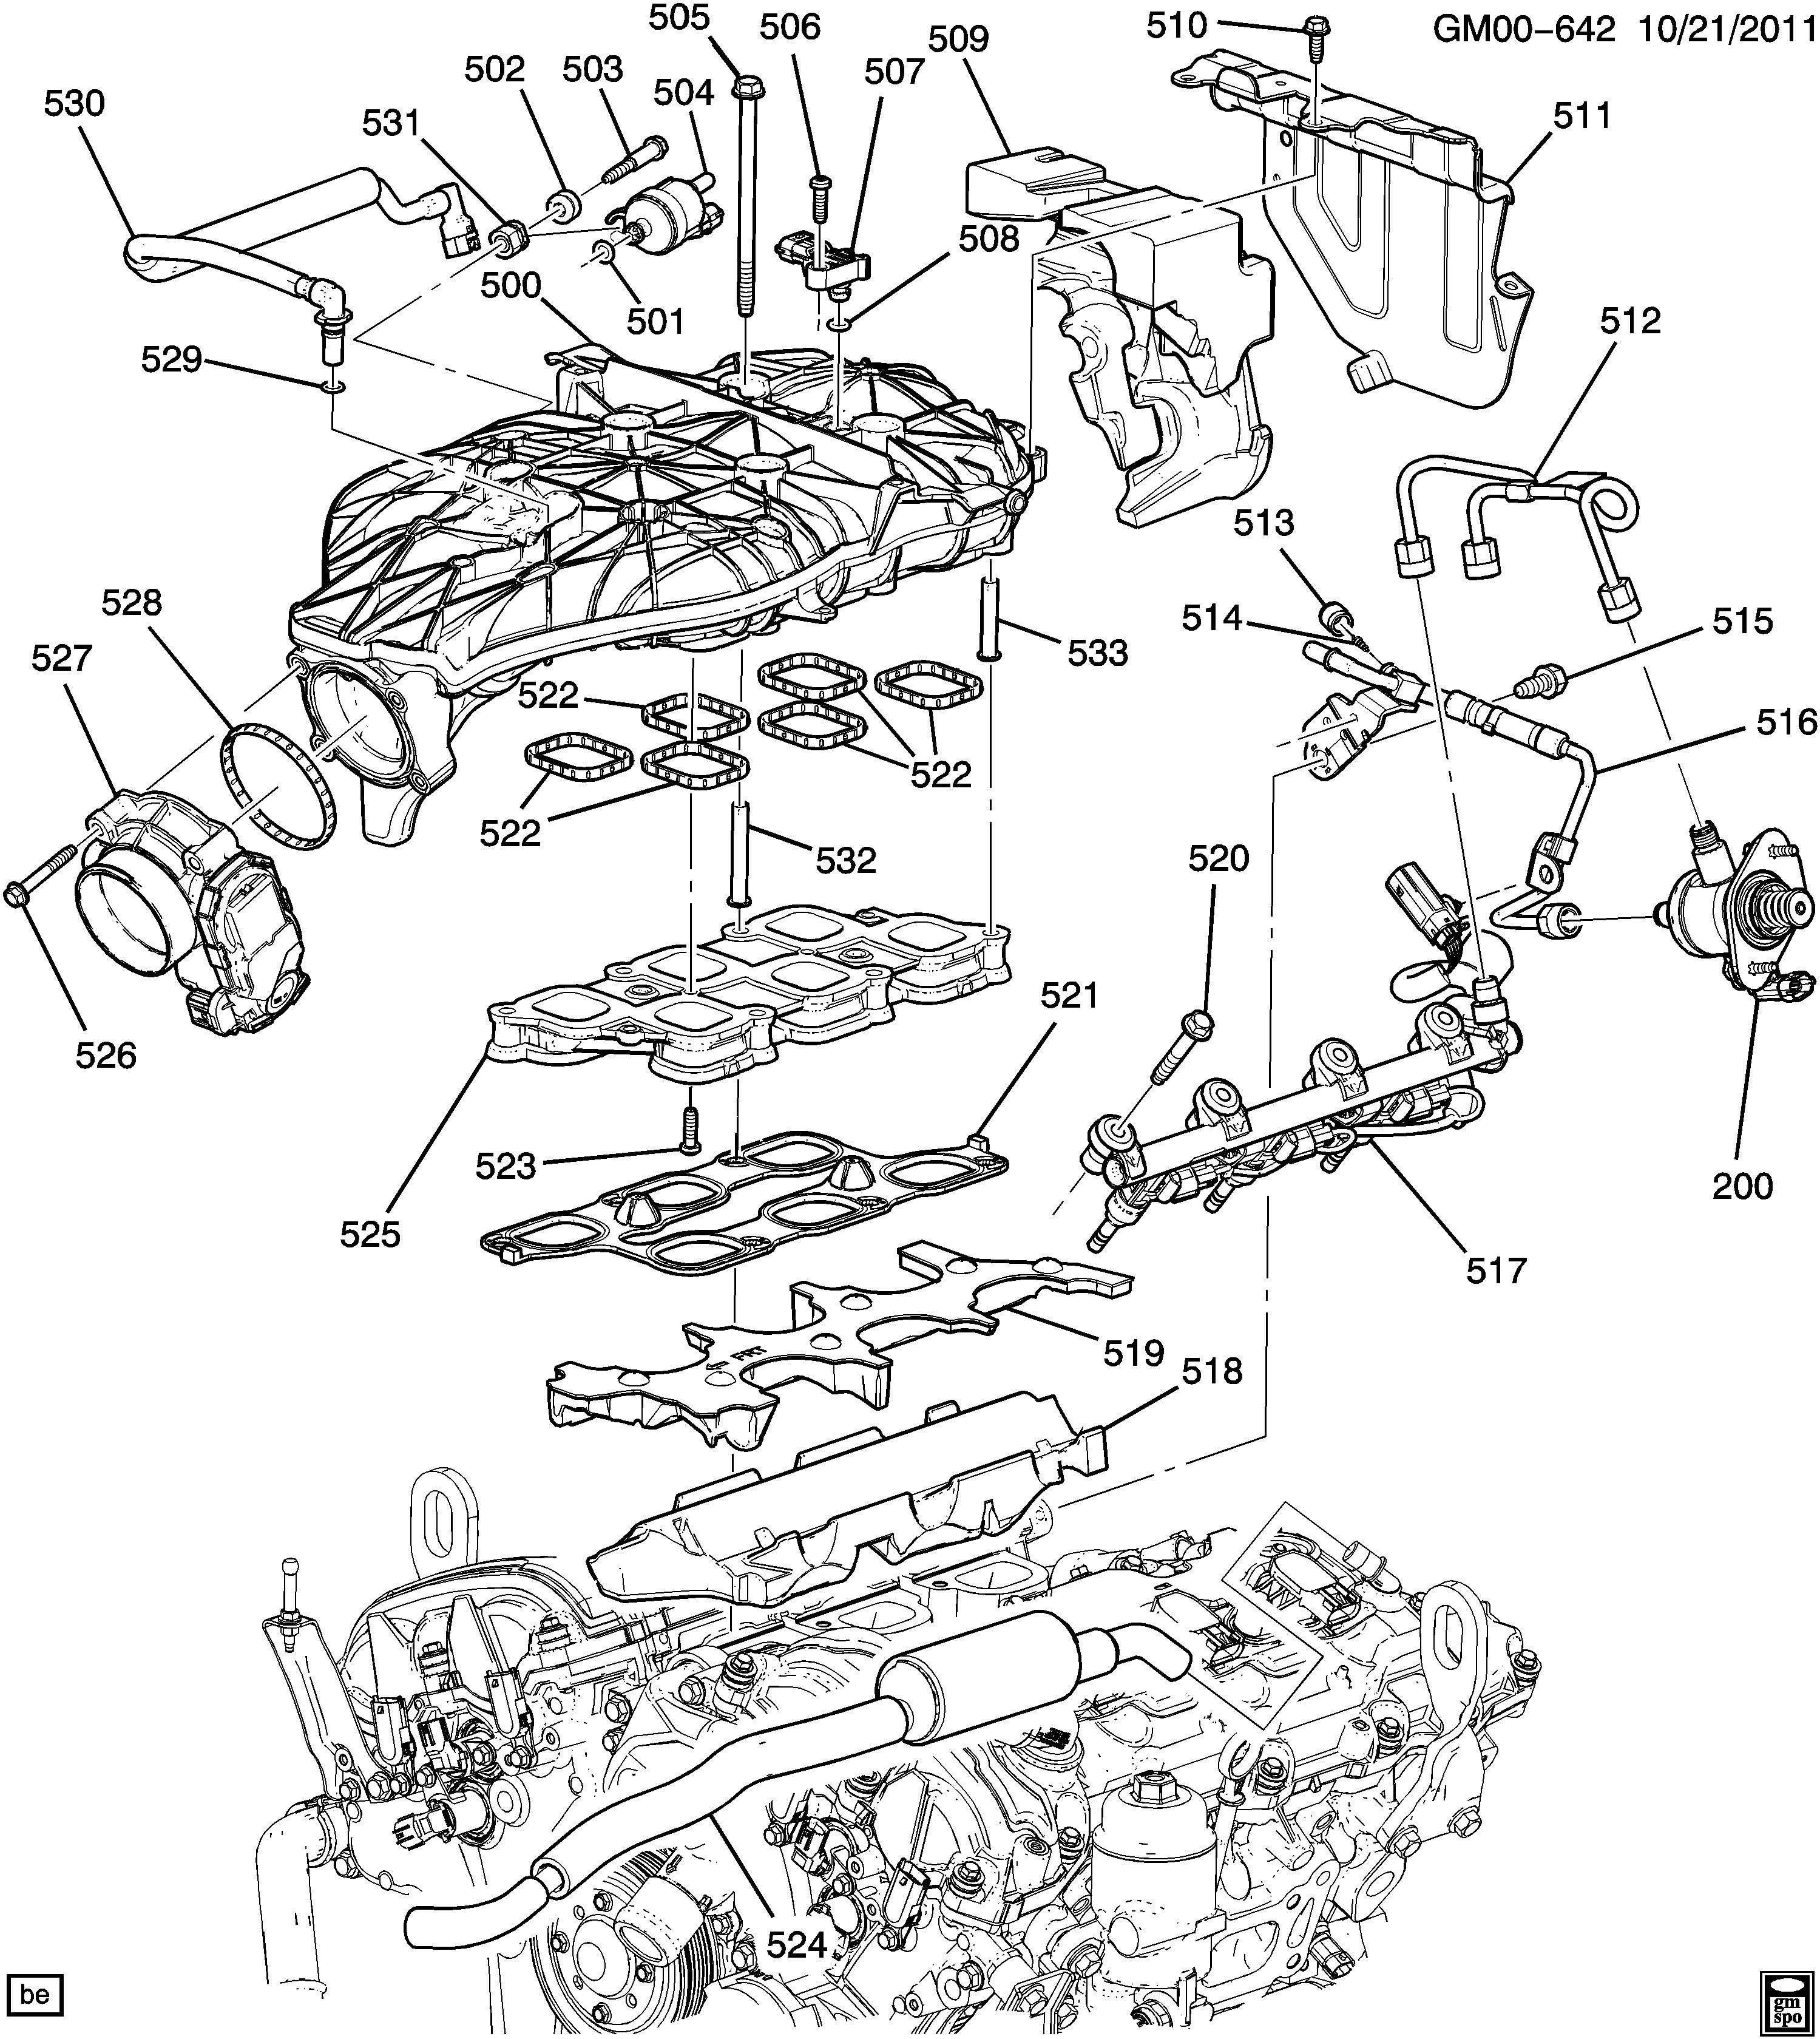 2000 Gmc sonoma Engine Diagram Diagram] Mazda 3 0 V6 Engine Diagram Cylinder 6 Full Version Of 2000 Gmc sonoma Engine Diagram